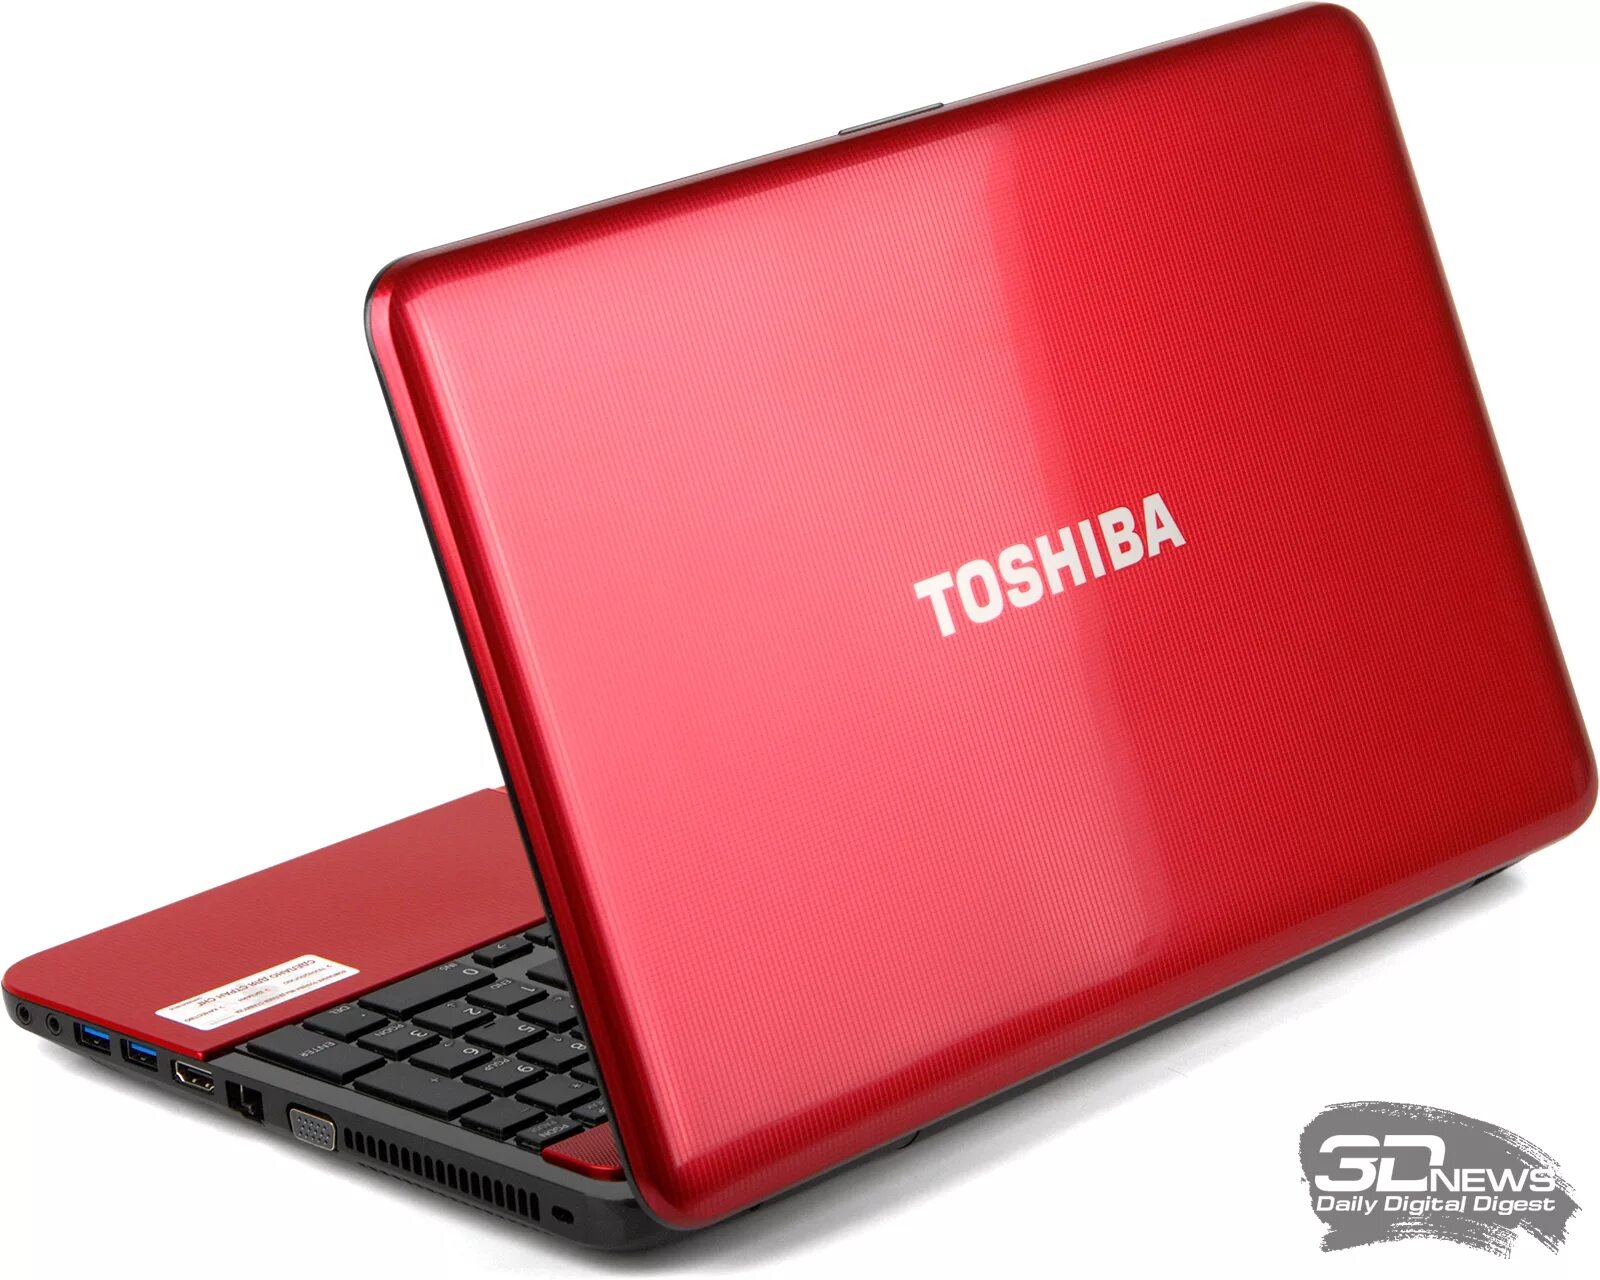 Тошиба 850 Satellite. Ноутбук Toshiba Satellite l750. Toshiba Satellite l850. Красный ноутбук Тошиба r 850. Купить ноутбук в улан